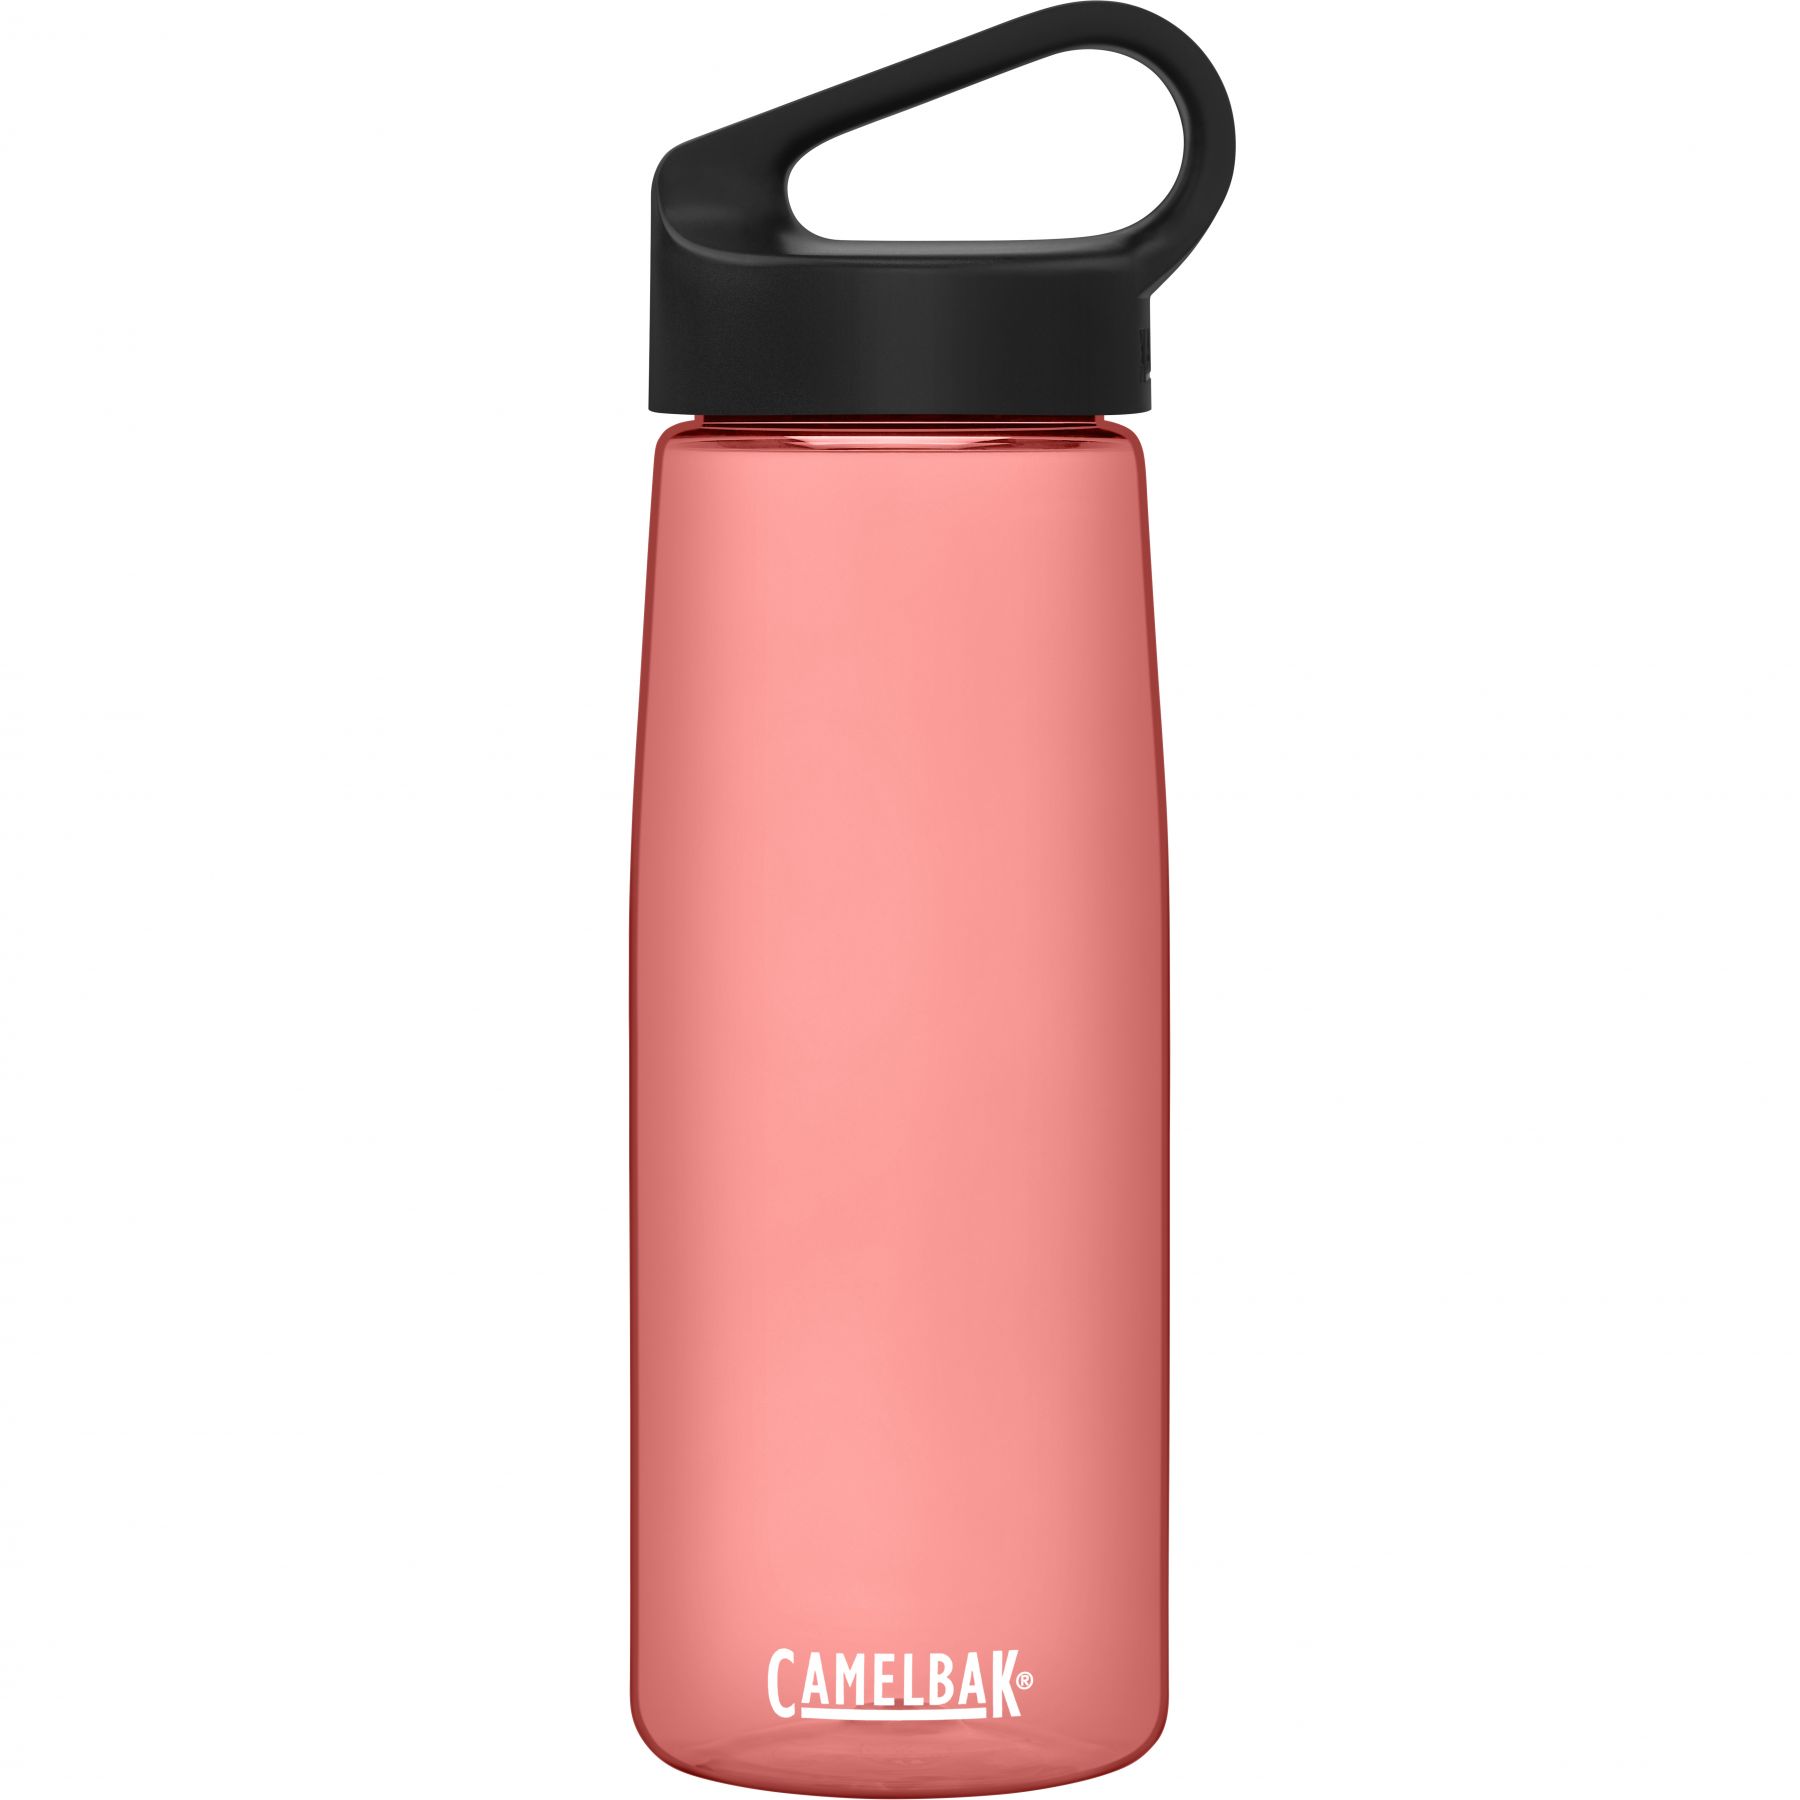 Billede af CamelBak Carry Cap, drikkedunk, 0,75L, lyserød